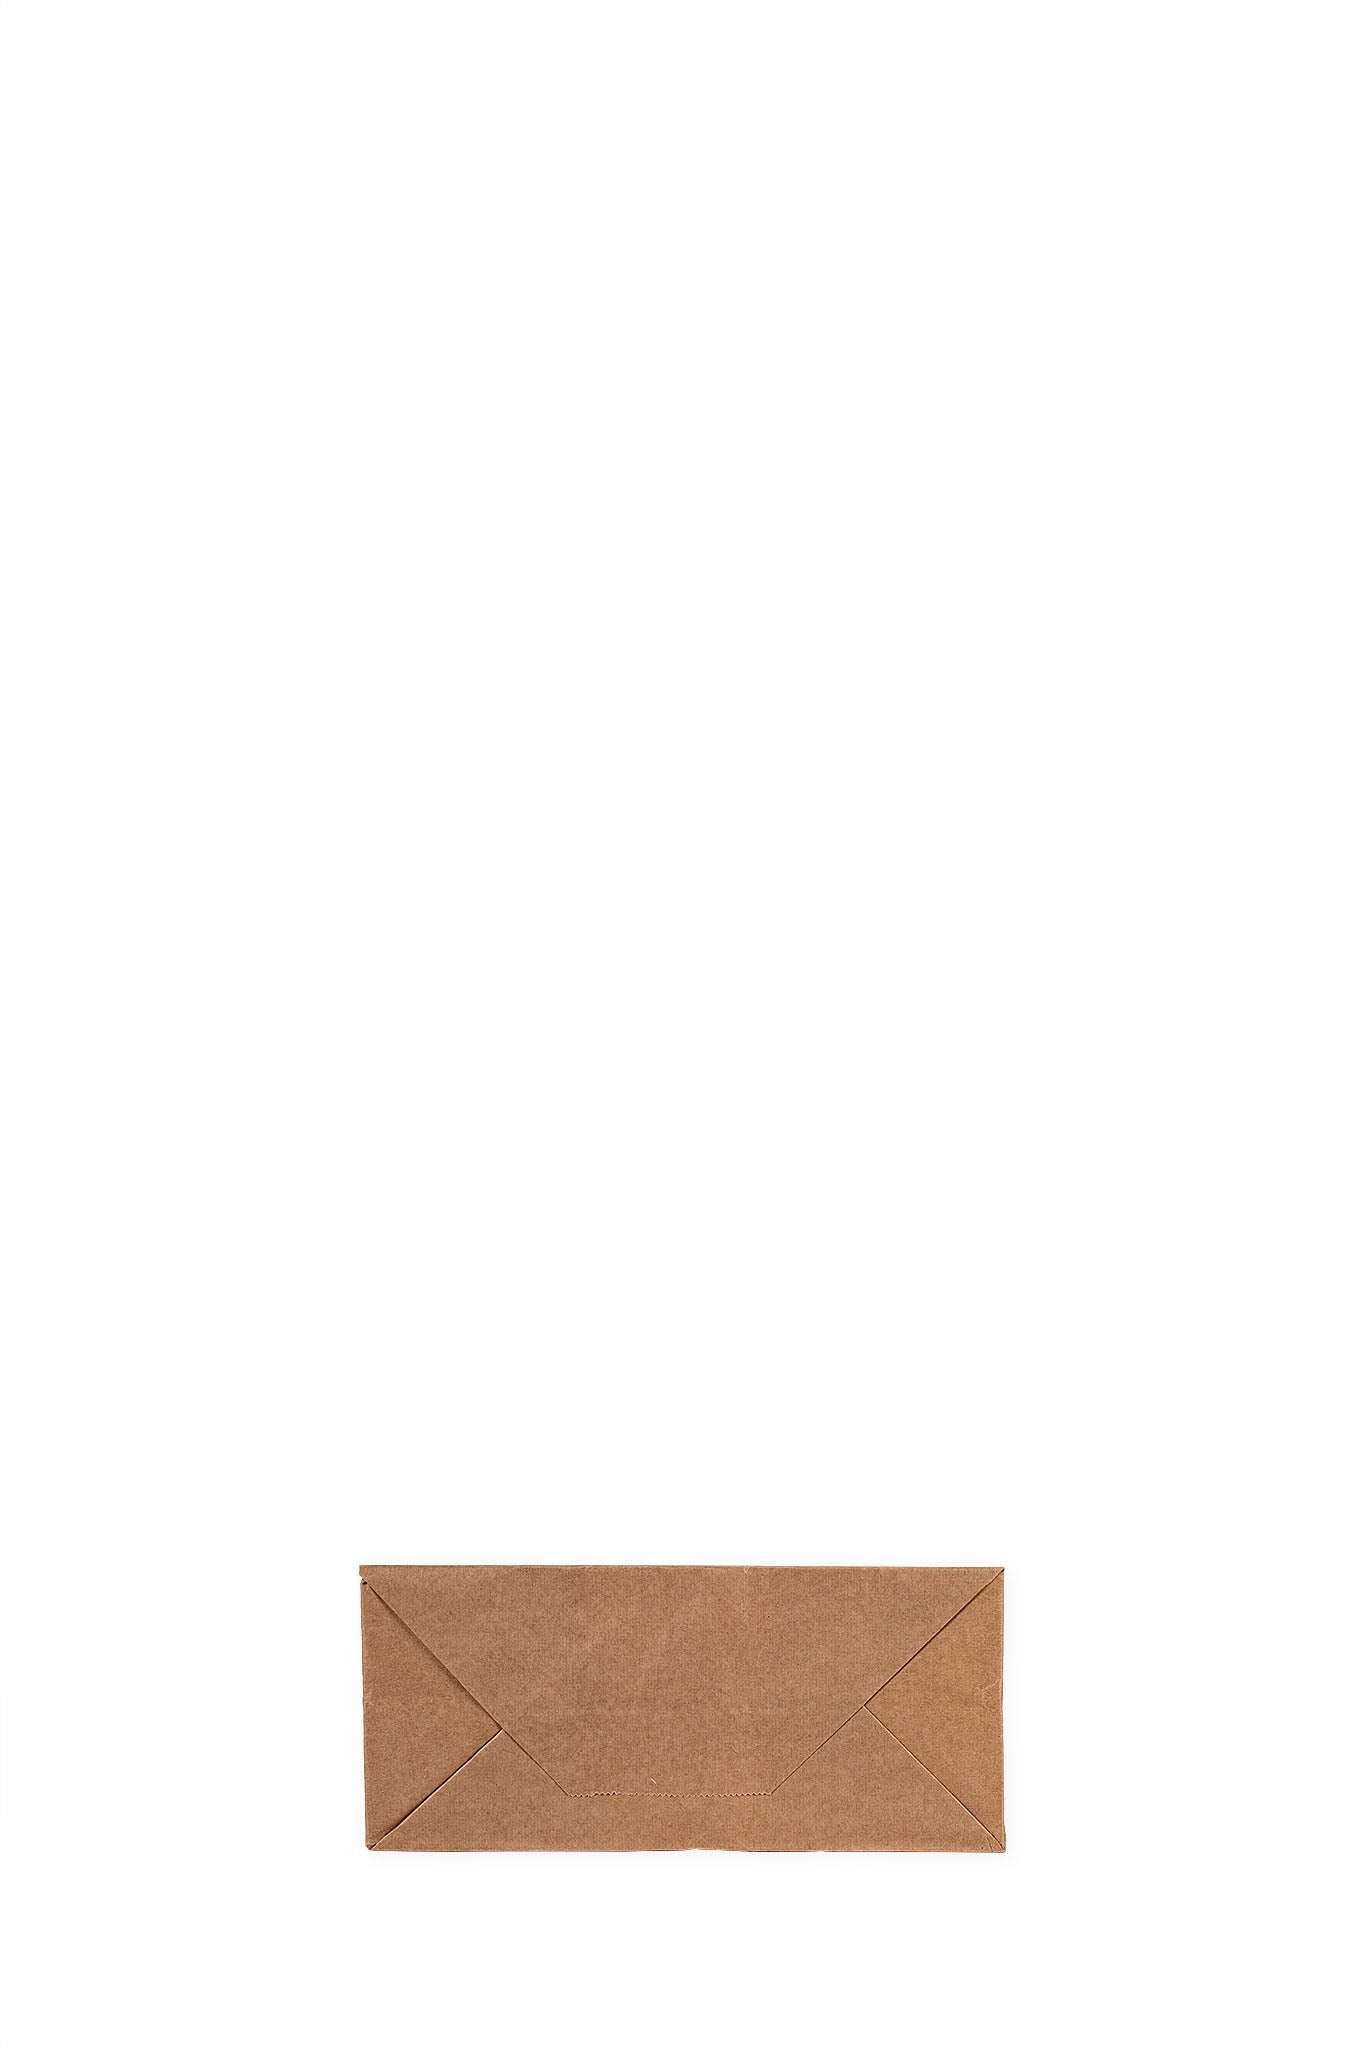 Das Bild zeigt die Bodenansicht einer Papiertragetasche vertrieben von der Malik Verpackungen GmbH Hanau. Die Papier-Tragetasche ist in braun und unbedruckt. Die Größe der Papiertragetasche ist 26x17x25cm. Fotograf: Detlev Steinhilber (detis.pix)